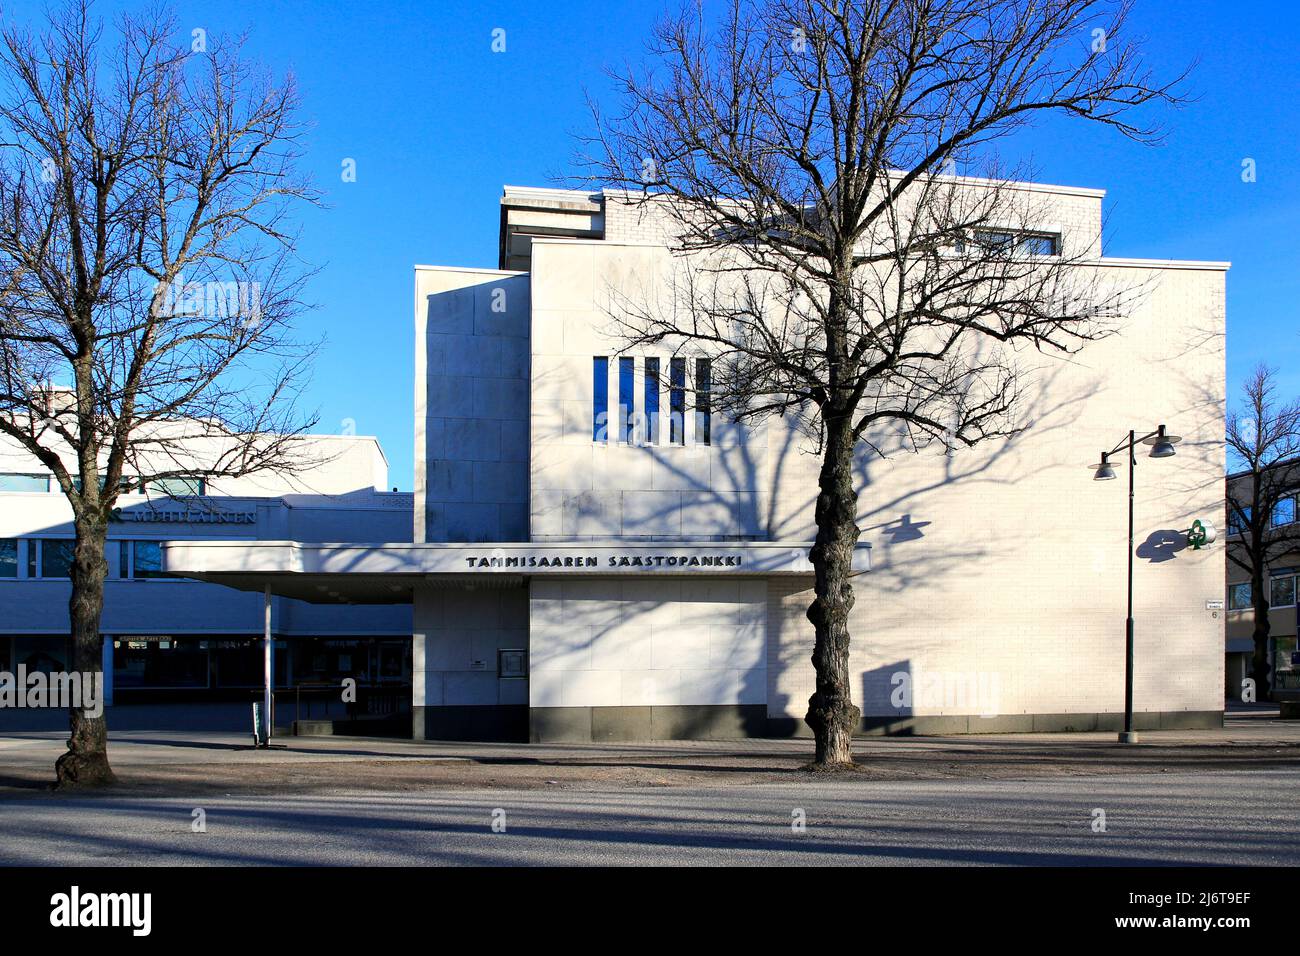 Ekenäs Sparbank Savings Bank bâtiment en marbre blanc et en brique conçu par Alvar Aalto et achevé en 1969. Ekenäs, Raseborg, Finlande. 17 avril 2022 Banque D'Images